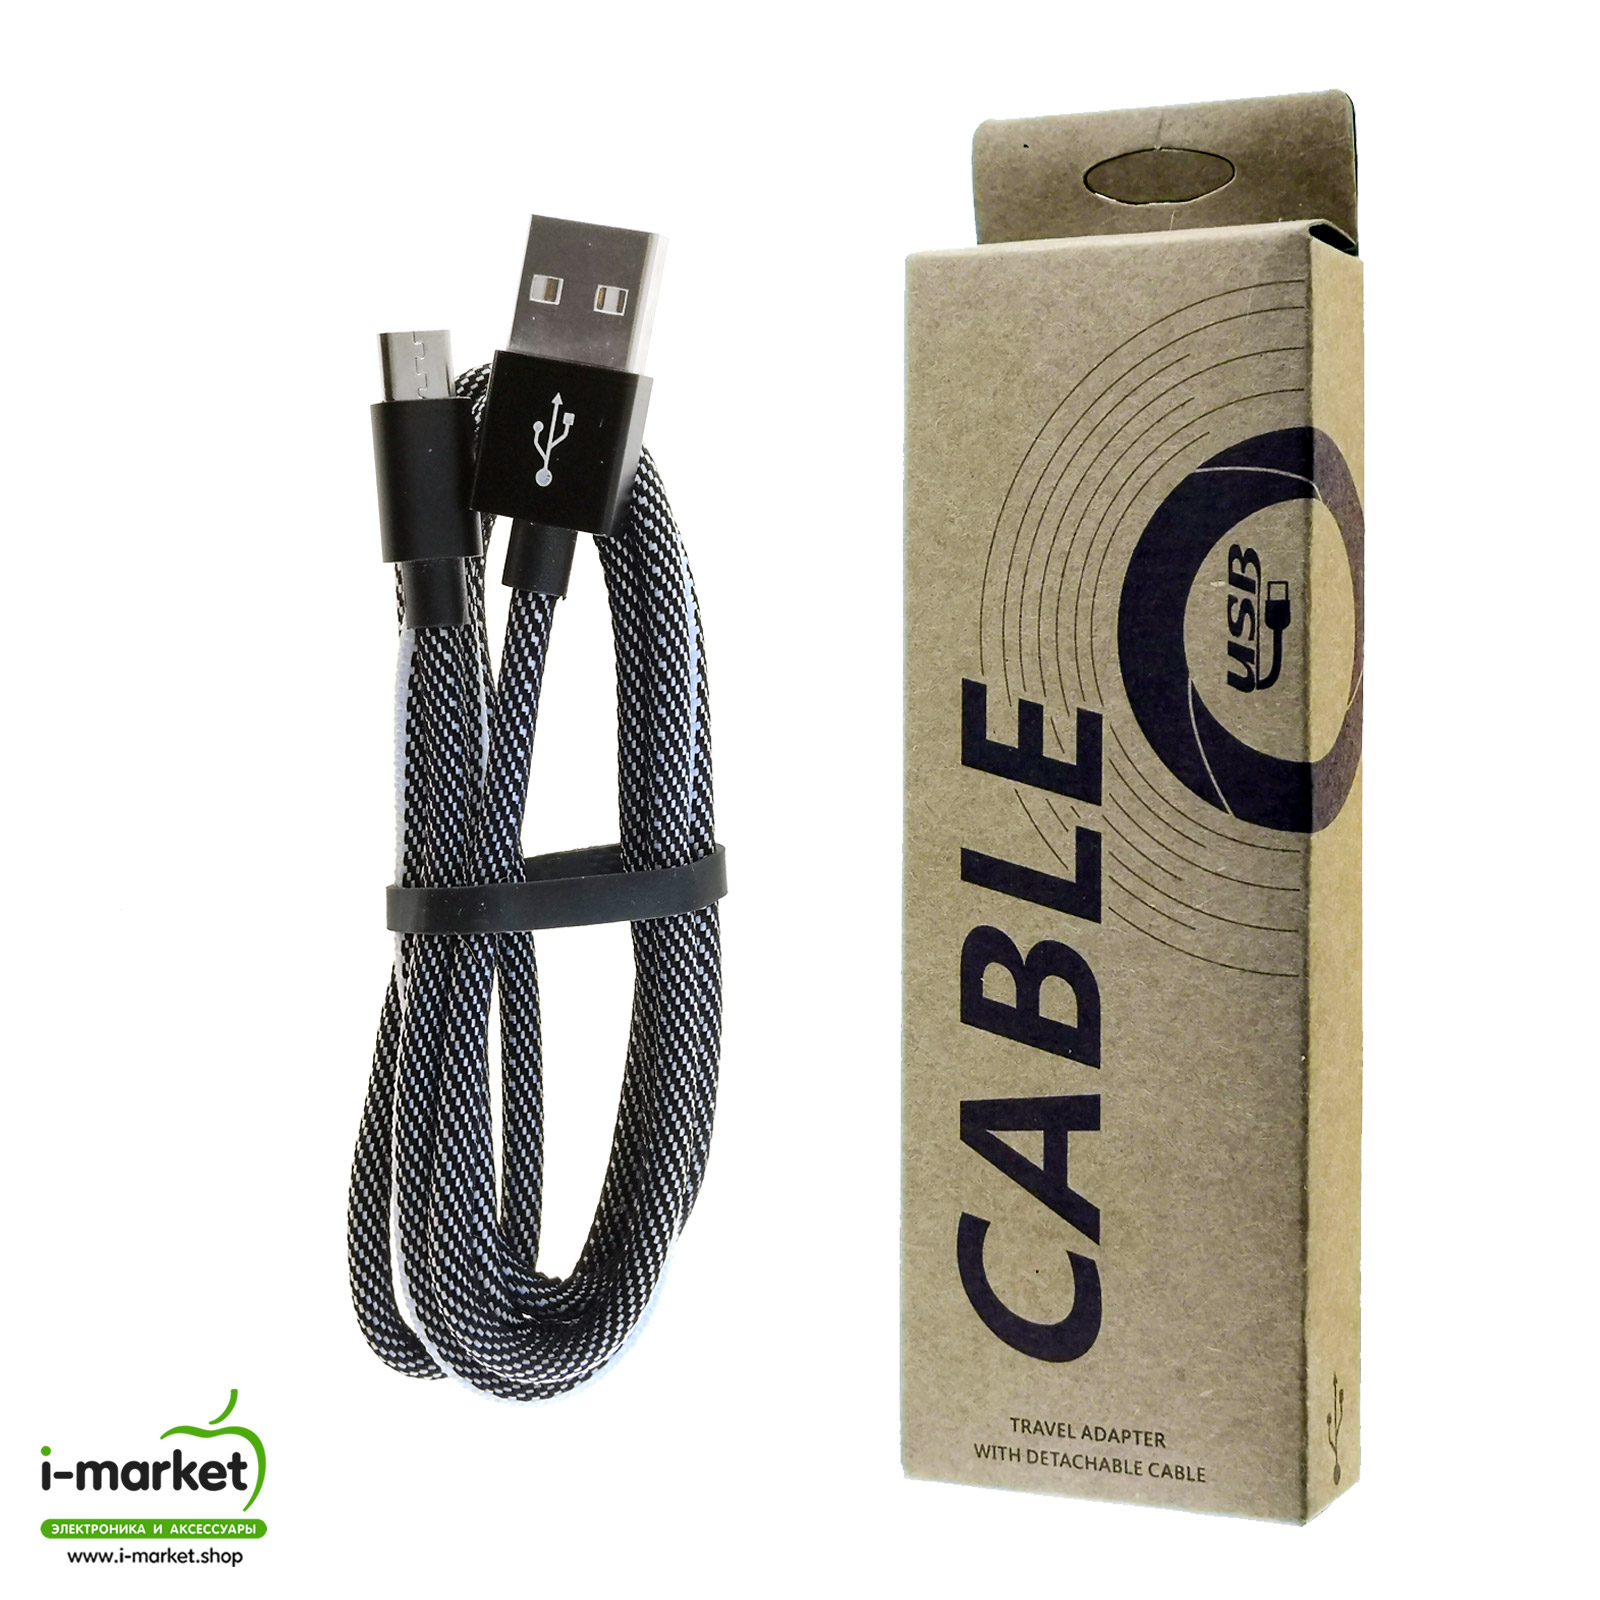 USB Дата кабель Micro USB, длина 1 метр, тканевое армирование, цвет бело черный